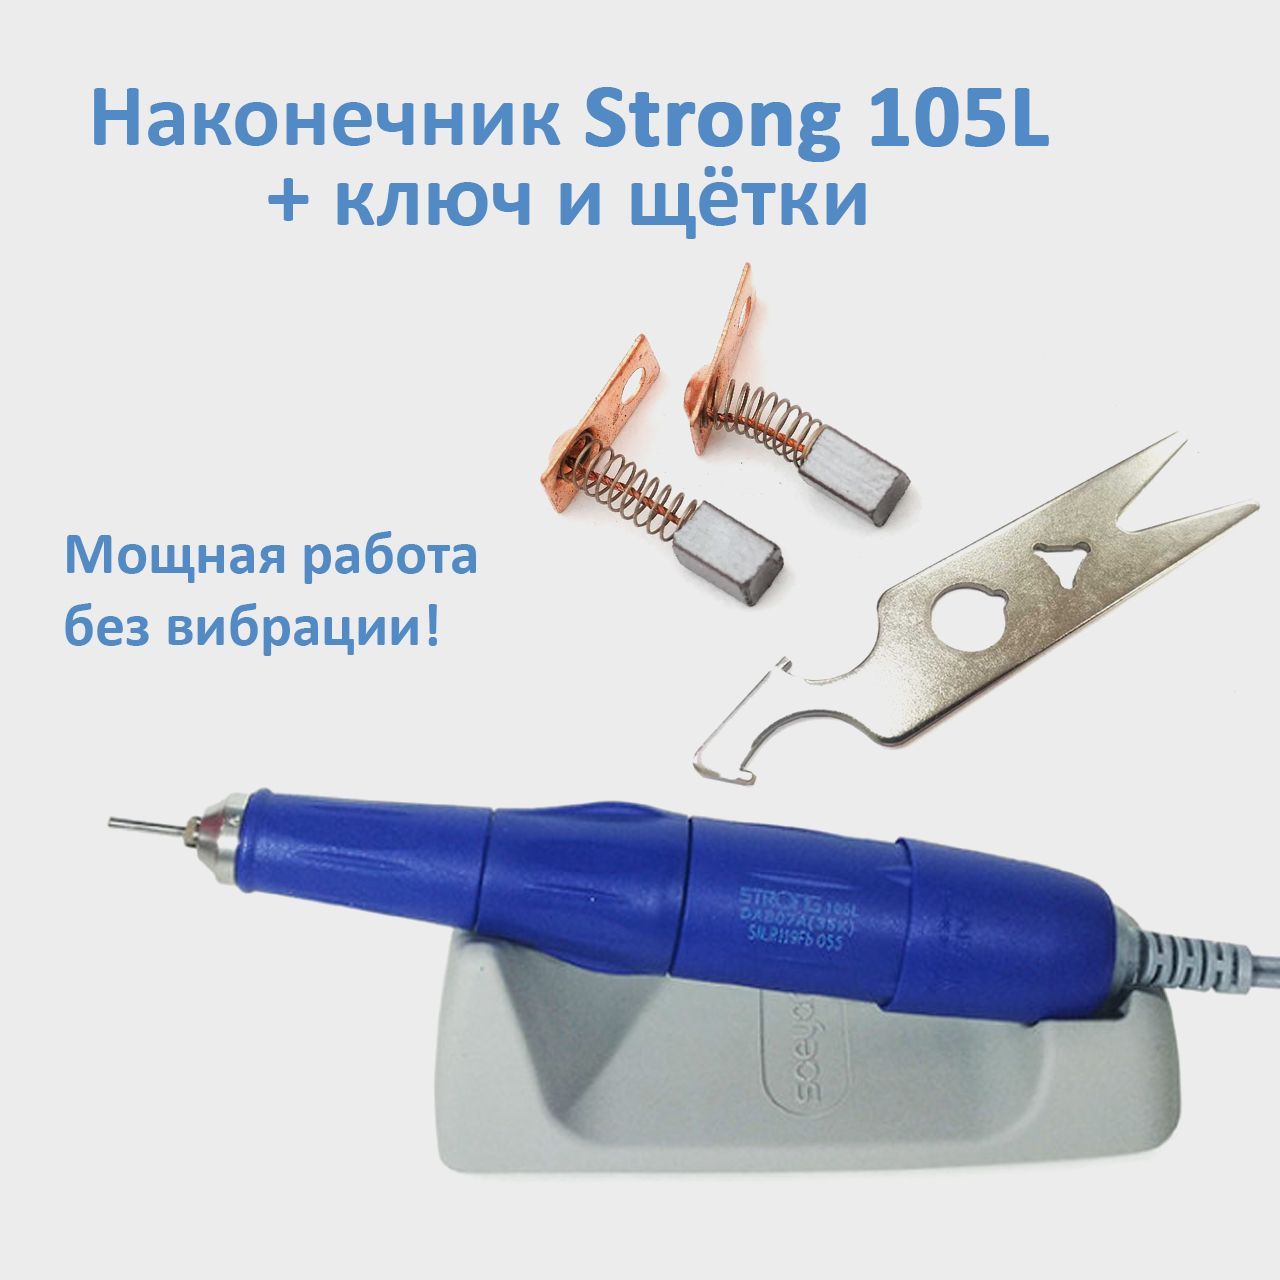 Ручка для маникюра Strong 105L 35000 оборотов, сменные щетки и ключ для наконечника С рассказы о китайских иероглифах